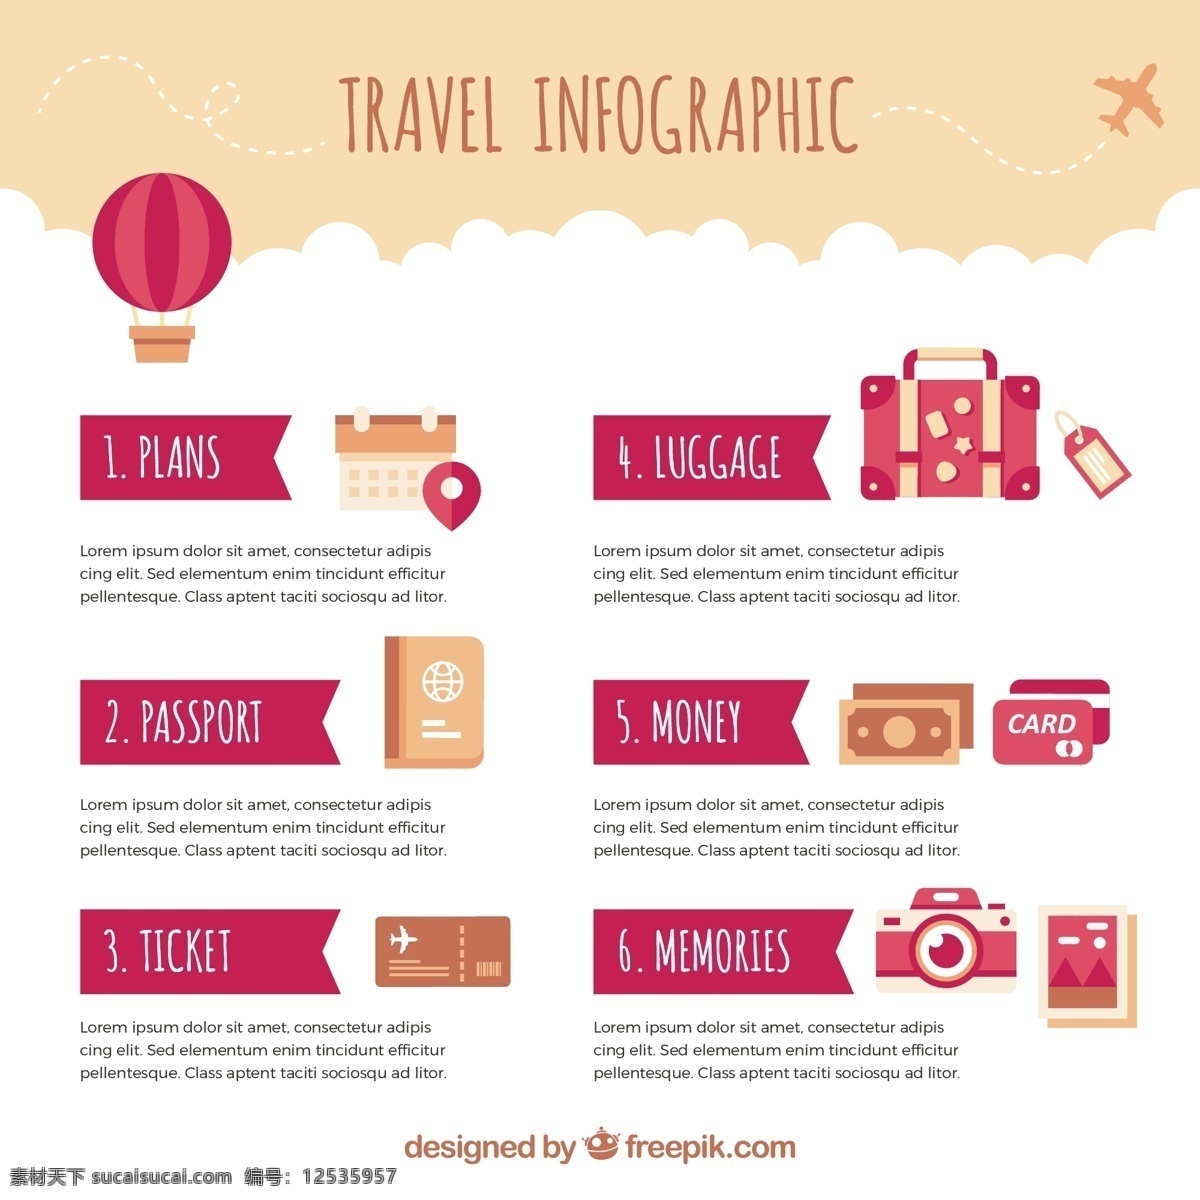 旅游 要素 信息 图表 模板 旅行 地图 世界 世界地图 图表模板元素 度假 护照 旅行箱 行李 在世界范围内